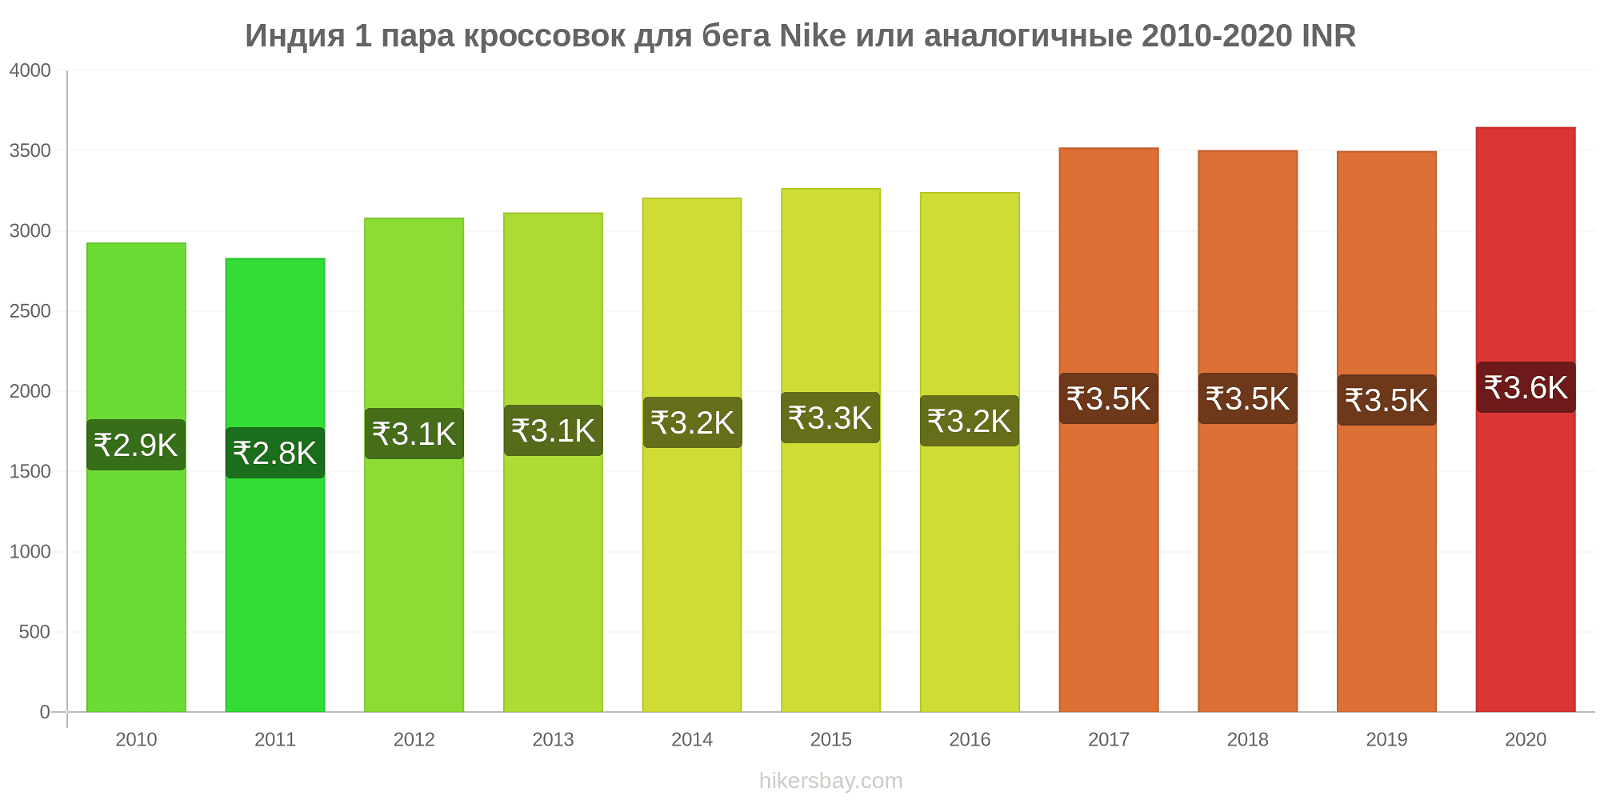 Индия изменения цен 1 пара кроссовок для бега Nike или аналогичные hikersbay.com